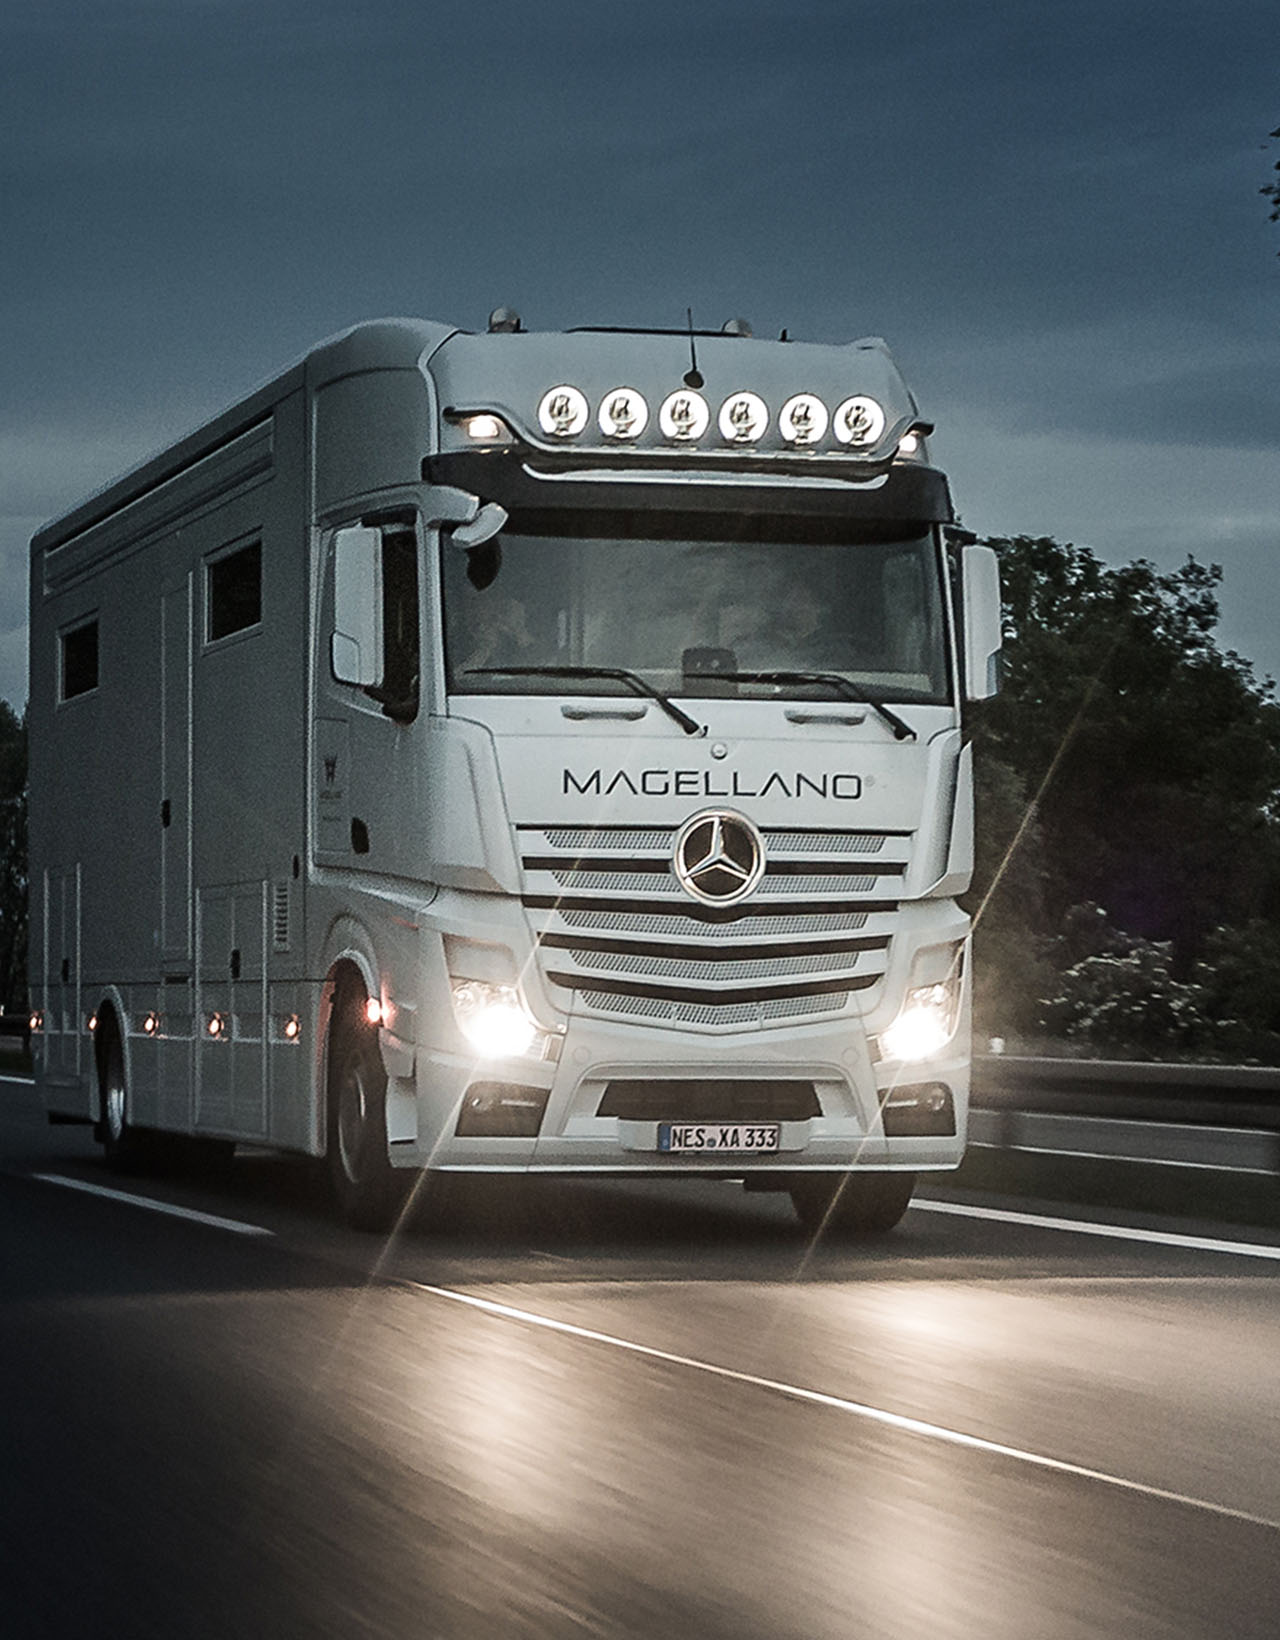 Magellano the One Luxus Wohnmobile - Trailer - Imagefilme Werbefilme auf Autobahn